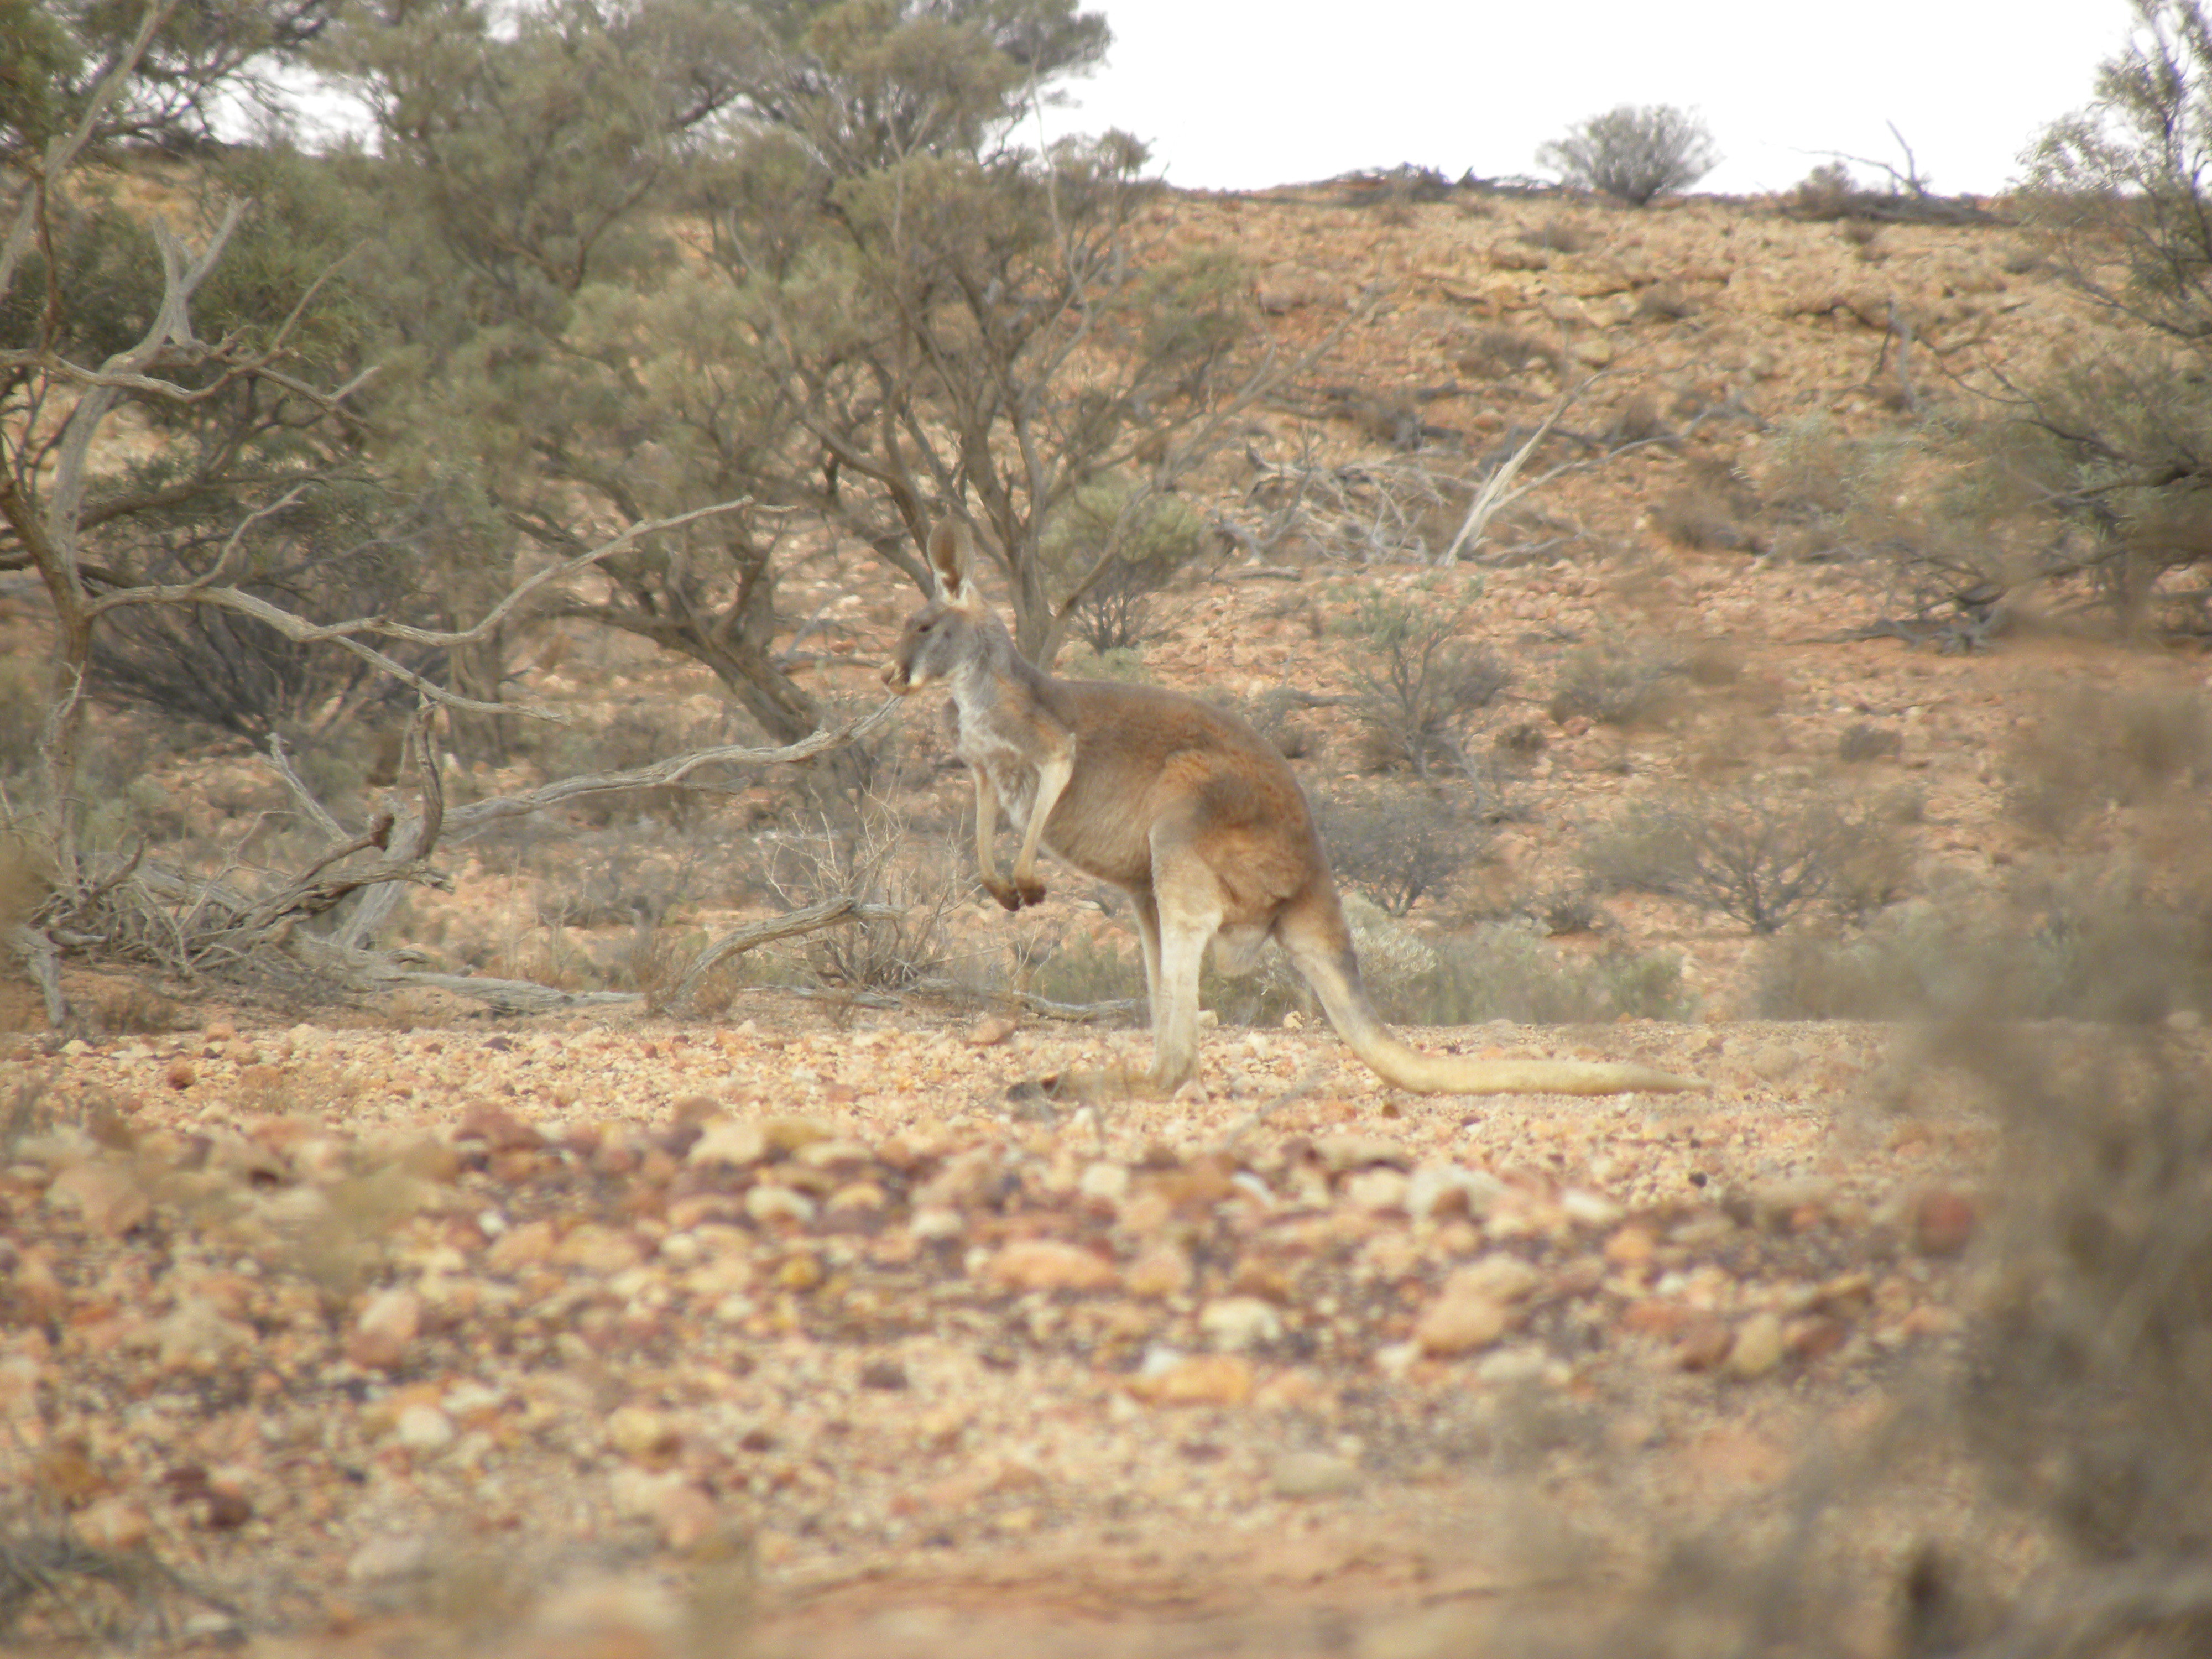 Image of red kangaroo